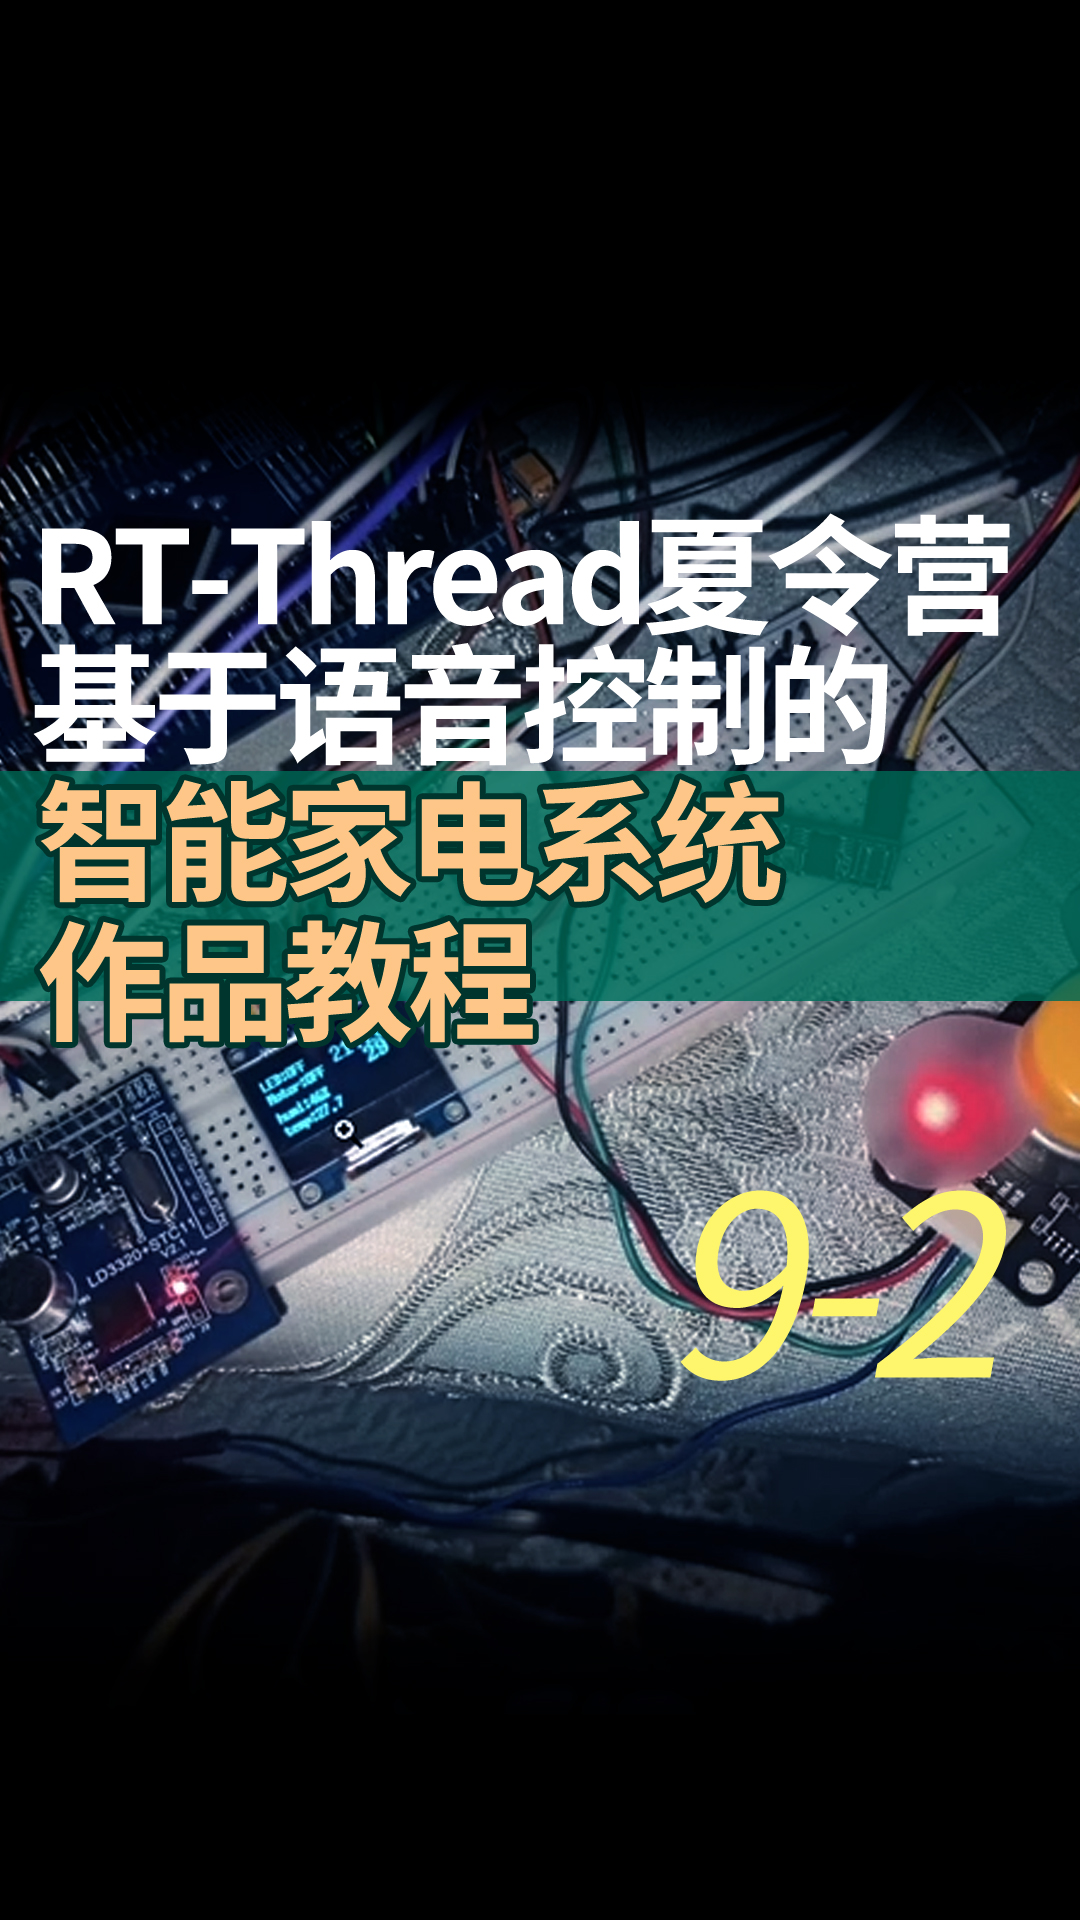 RT-Thread夏令營基于語音控制的智能家電系統作品教程9-2U8g2軟件包的使用